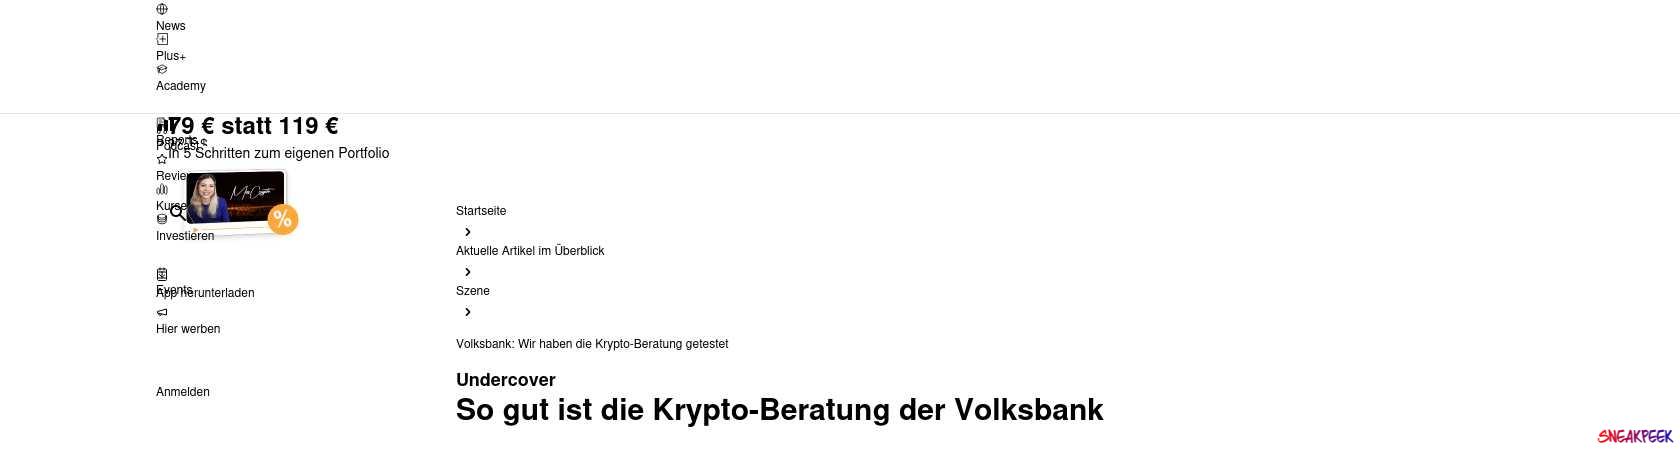 Read the full Article:  ⭲ Volksbank: Wir haben die Krypto-Beratung getestet